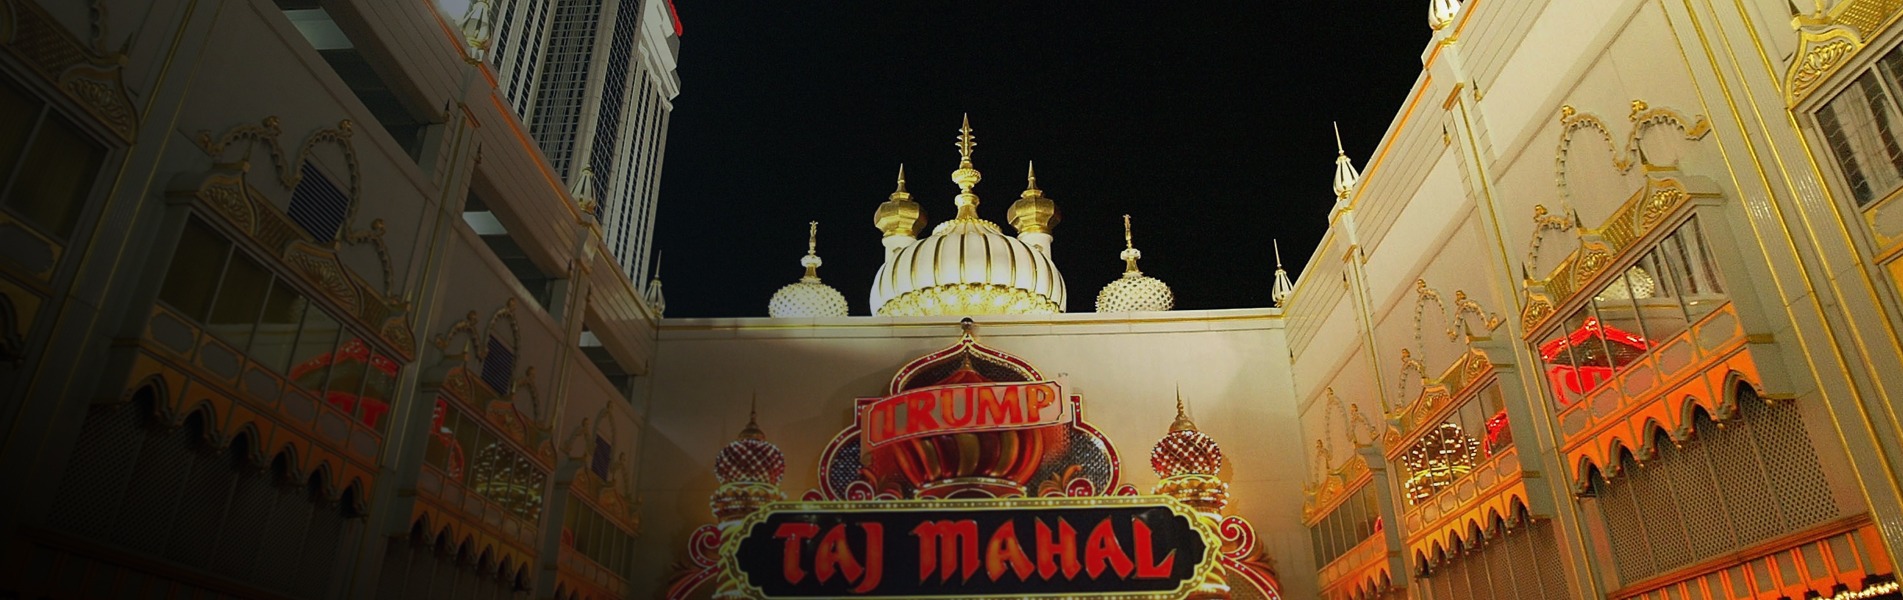 Trump Taj Mahal Casino Resort Atlantic City 2